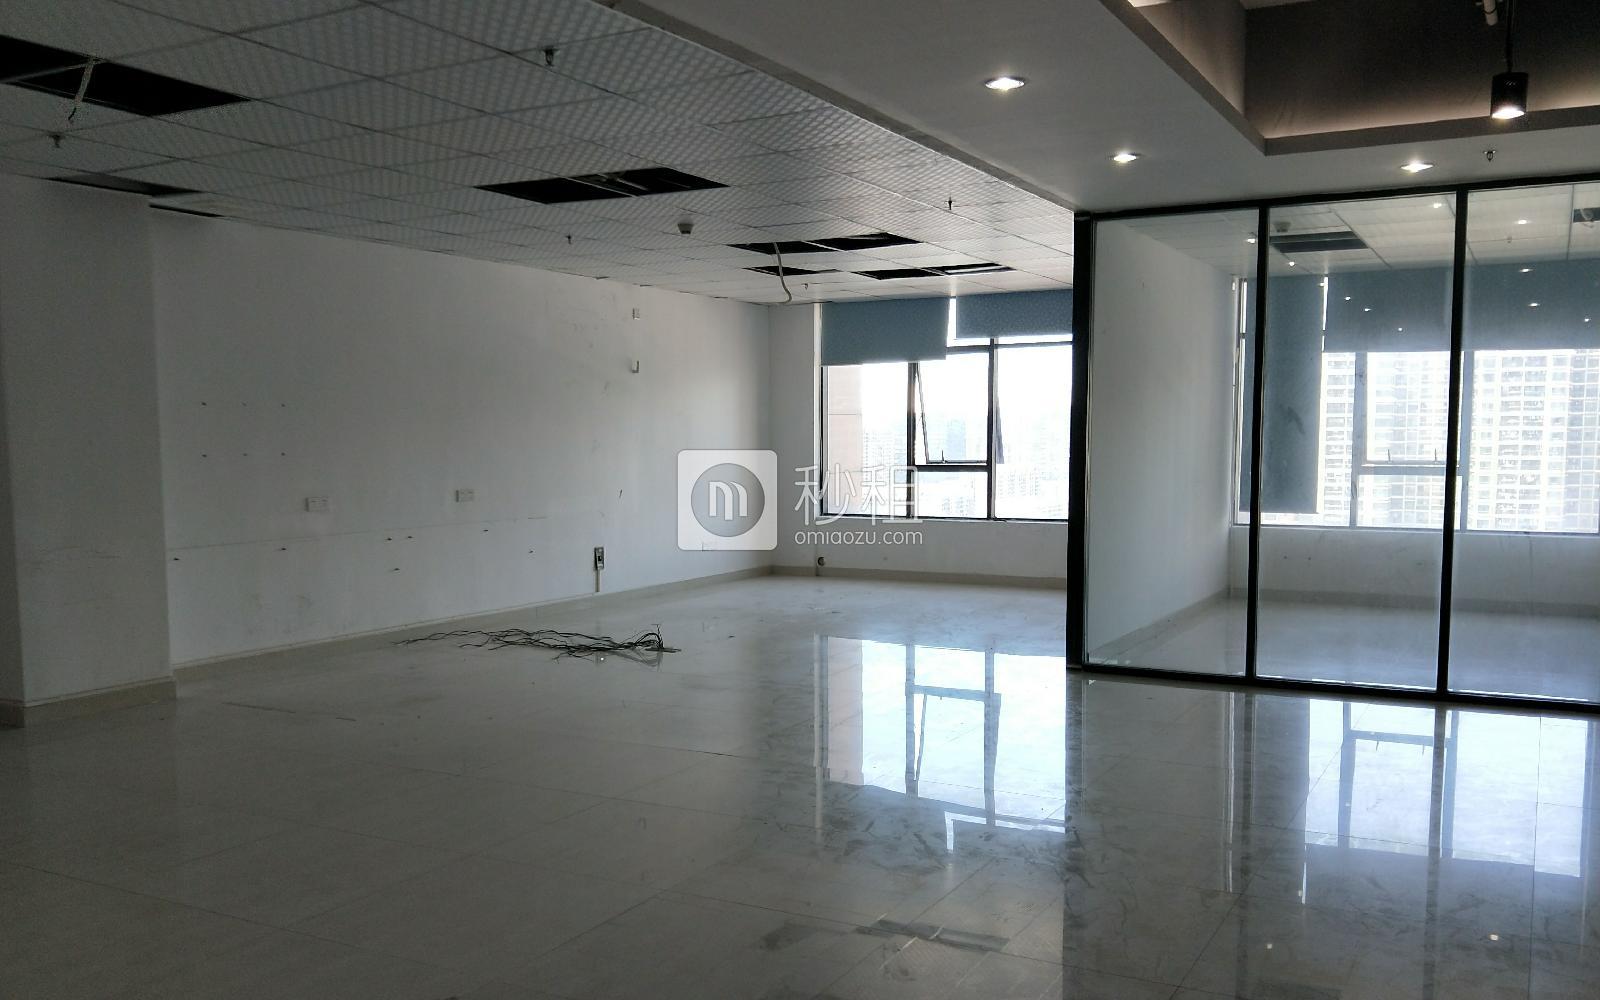 旭生大厦写字楼出租428平米简装办公室78元/m².月